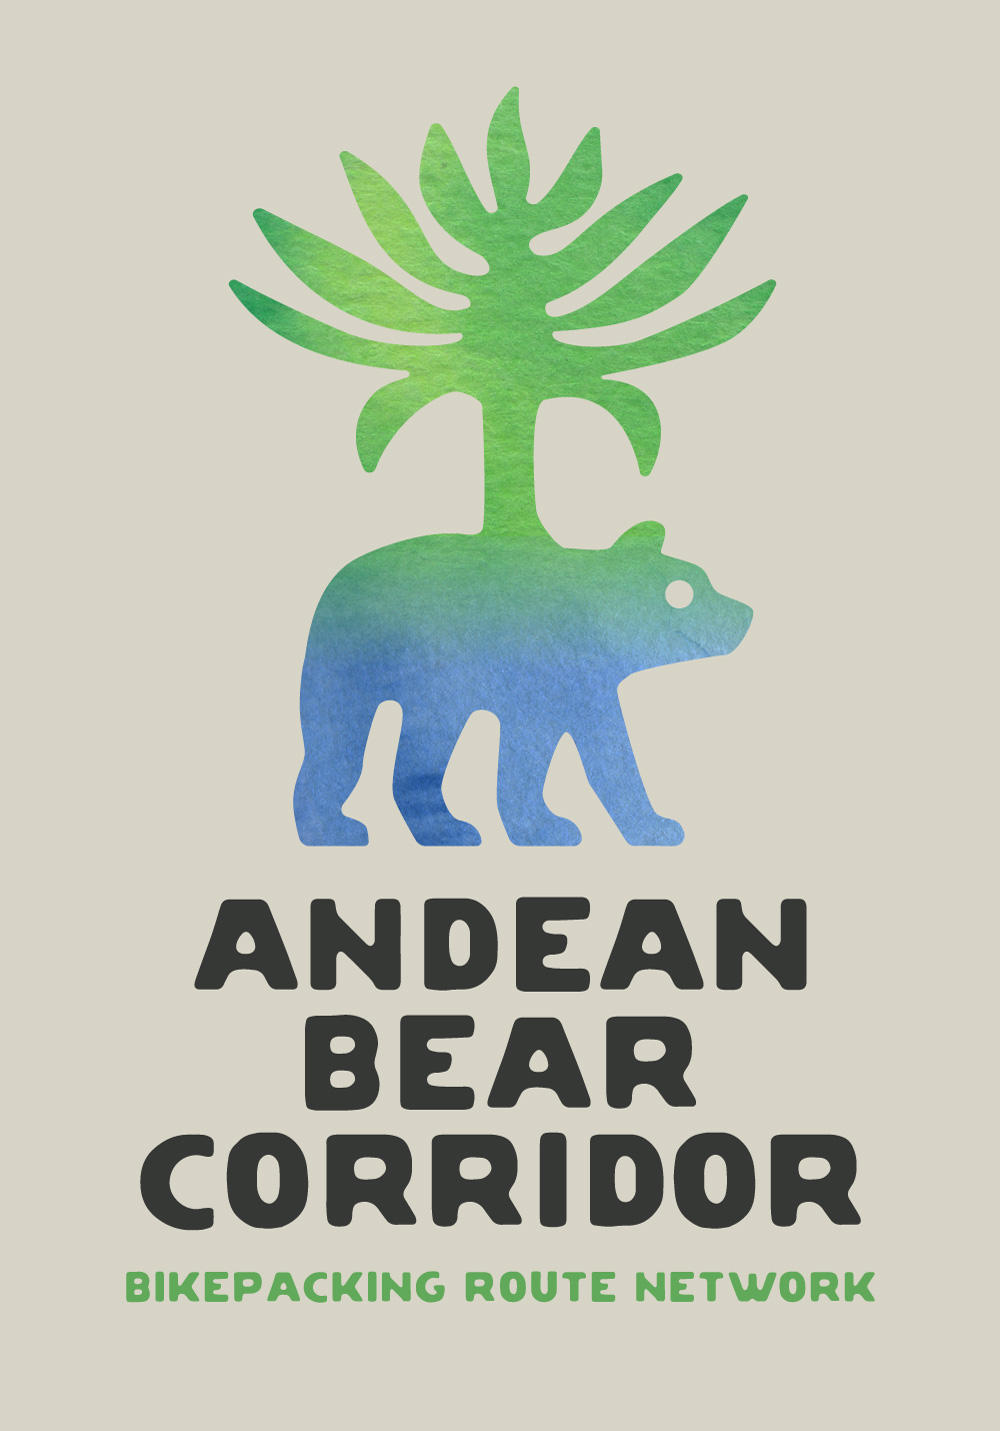 Andean Bear Corridor